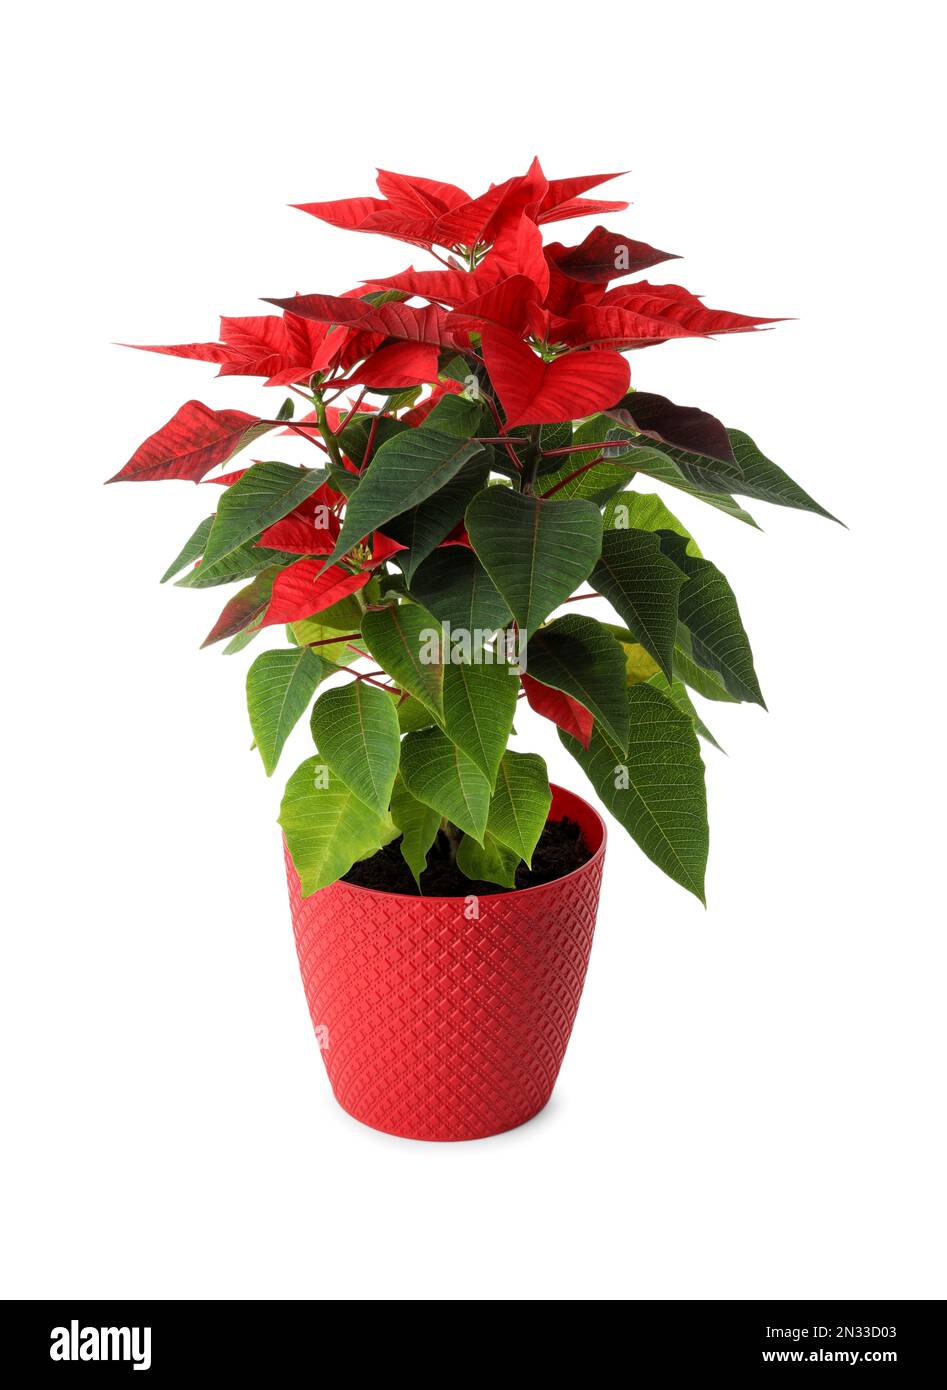 Magnifique poinsettia (fleur de Noël traditionnelle) en pot sur fond blanc  Photo Stock - Alamy